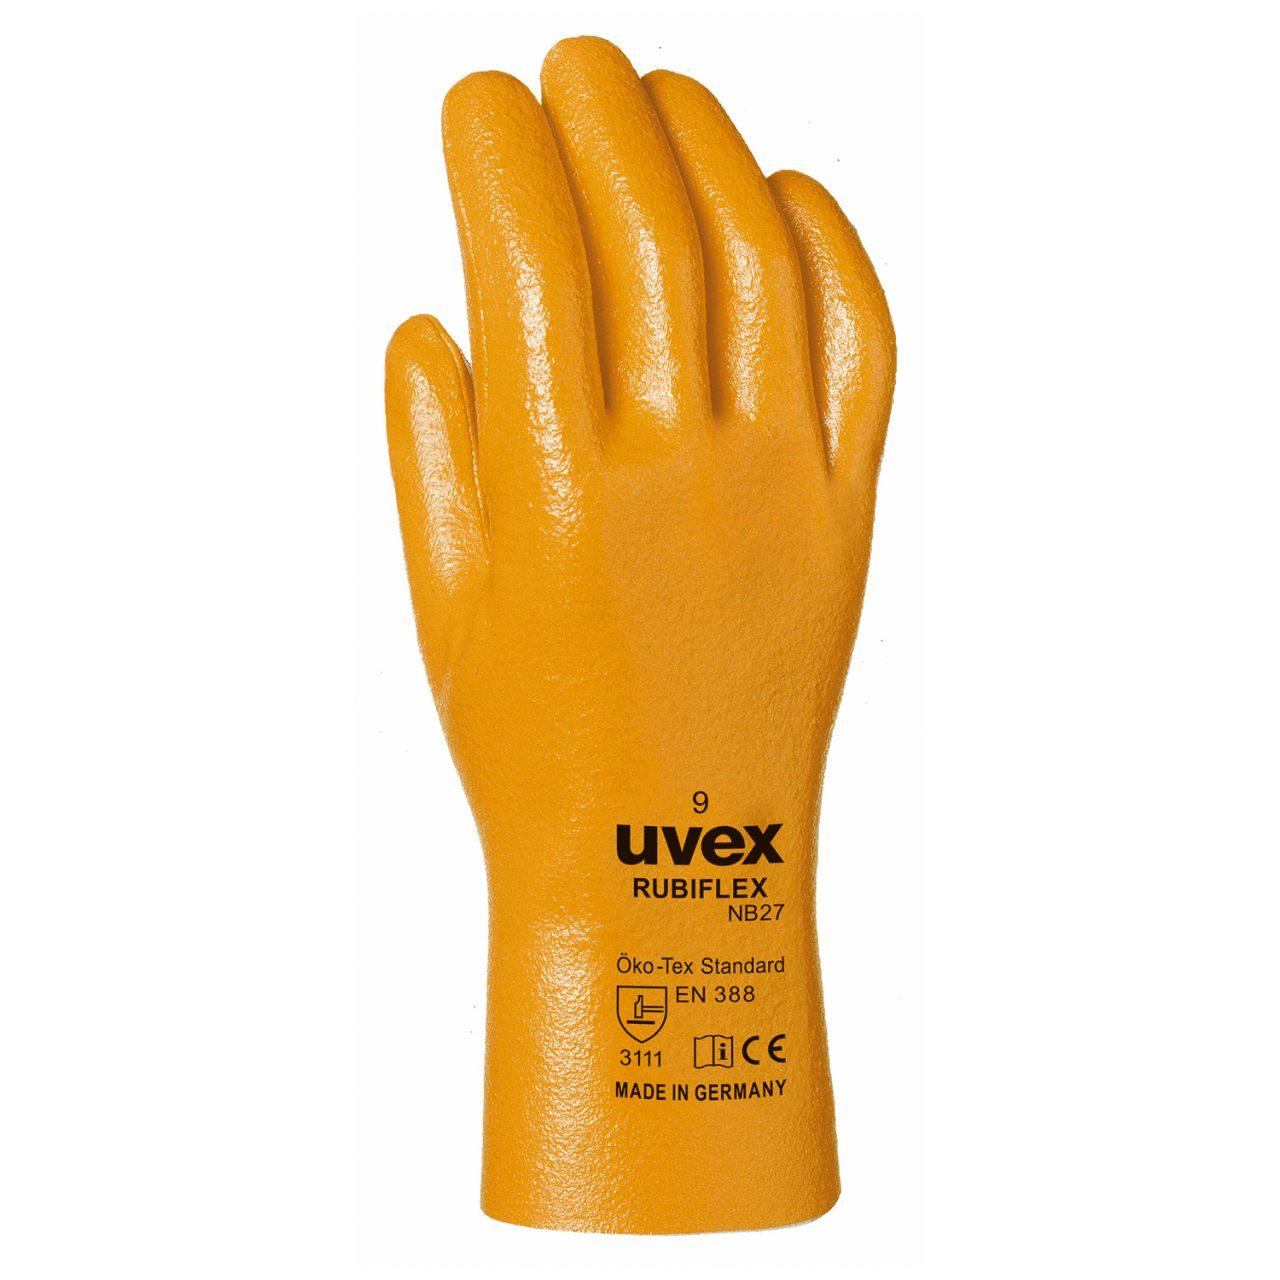 Защитные перчатки uvex рубифлекс NB27